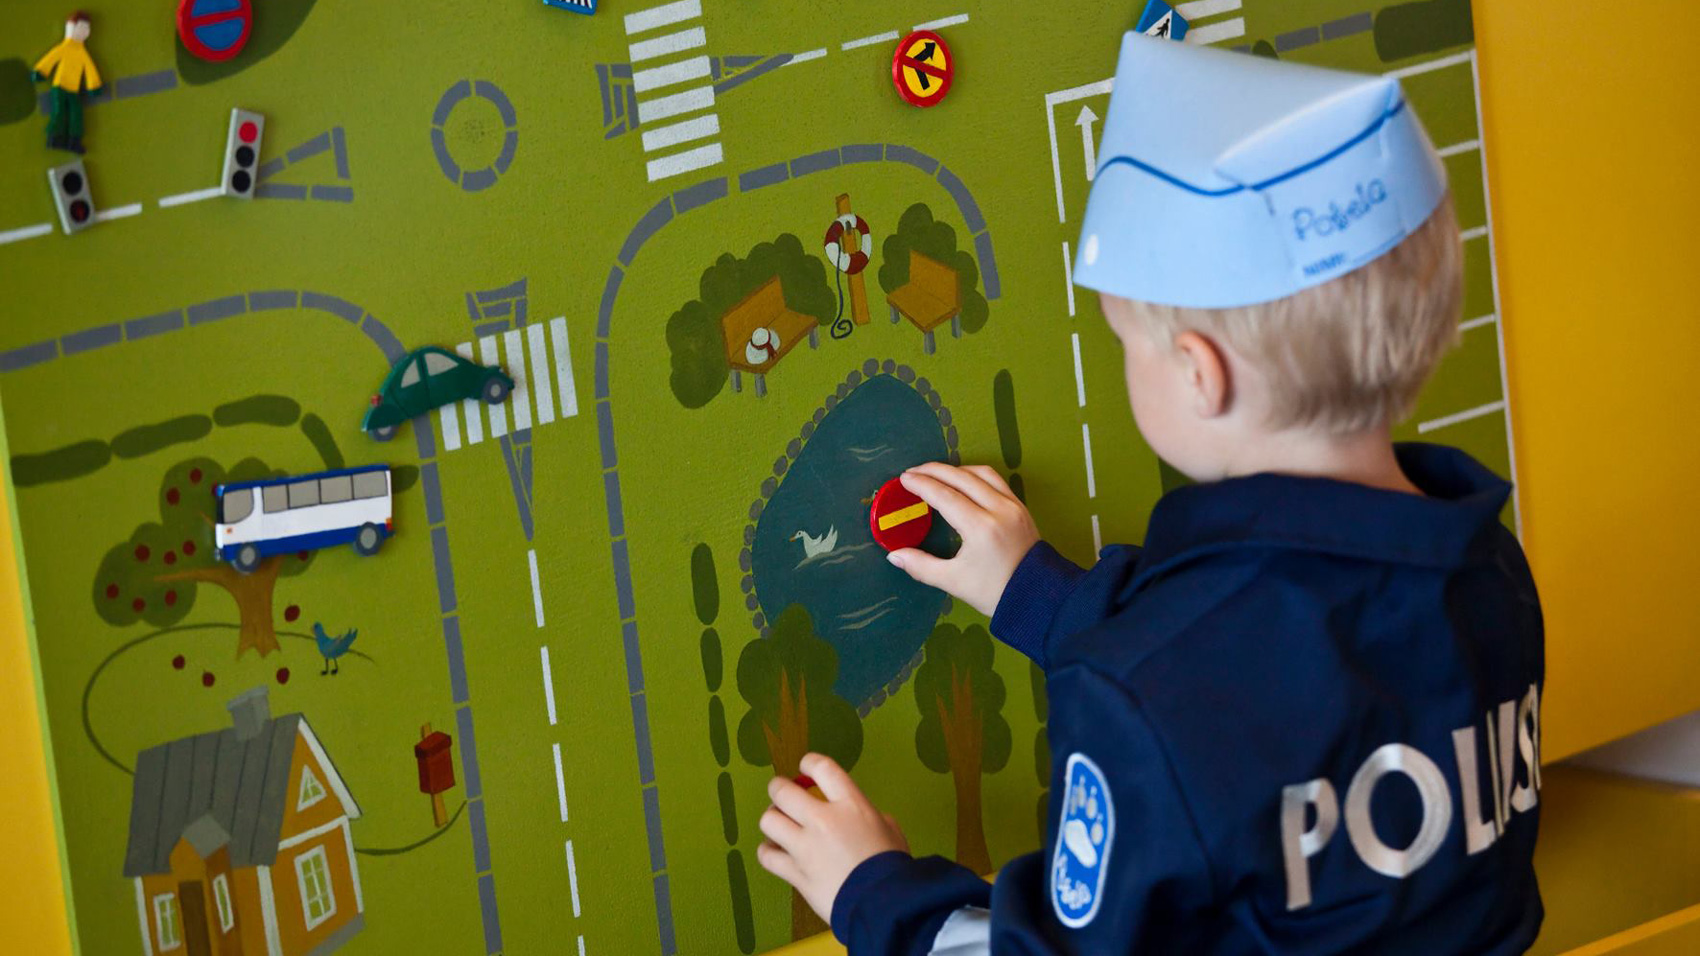 Lapsi leikkii Pokelassa liikenneleikkiä päällään poliisihaalari. Kuva Poliisimuseo.